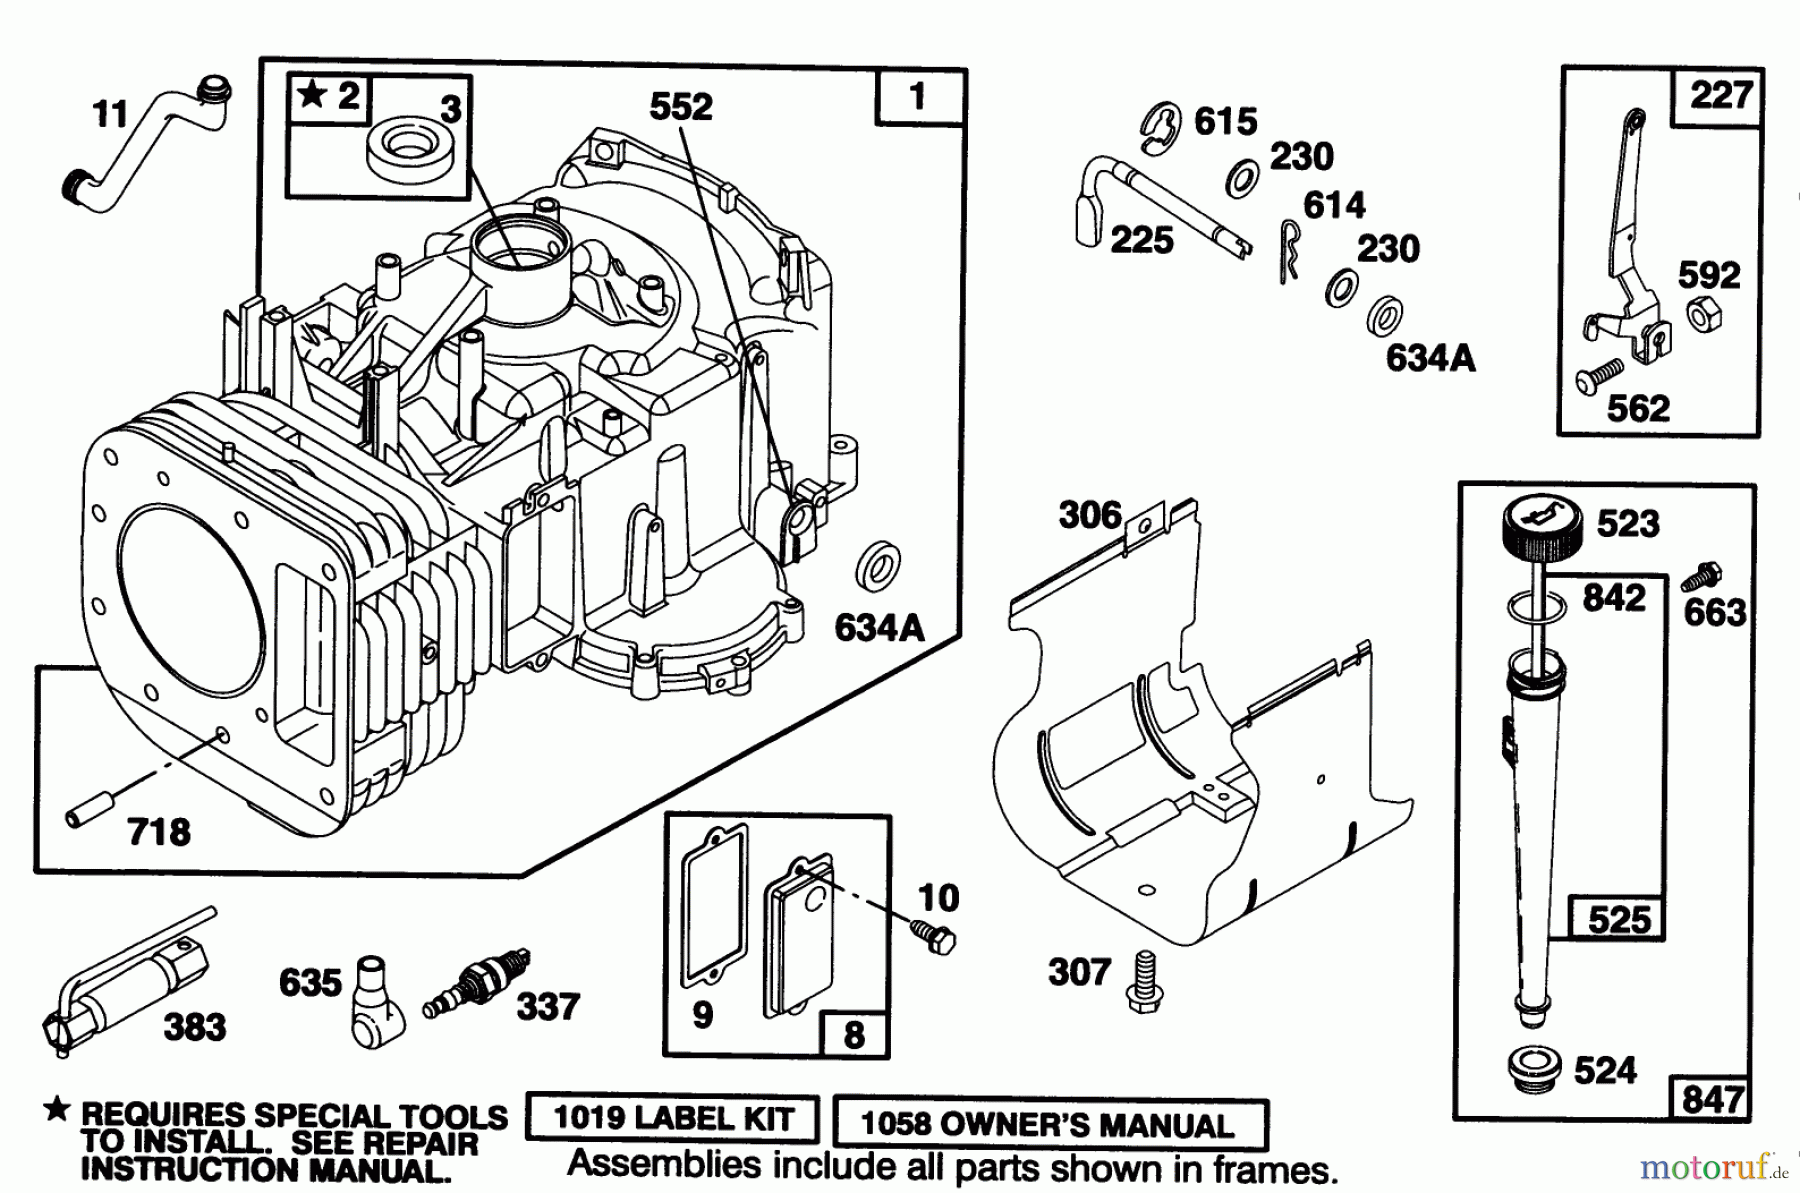  Toro Neu Mowers, Lawn & Garden Tractor Seite 1 71192 (15-44HXL) - Toro 15-44HXL Lawn Tractor, 1996 (6900001-6999999) ENGINE BRIGGS & STRATTON MODEL 28Q777-0168-01 #1